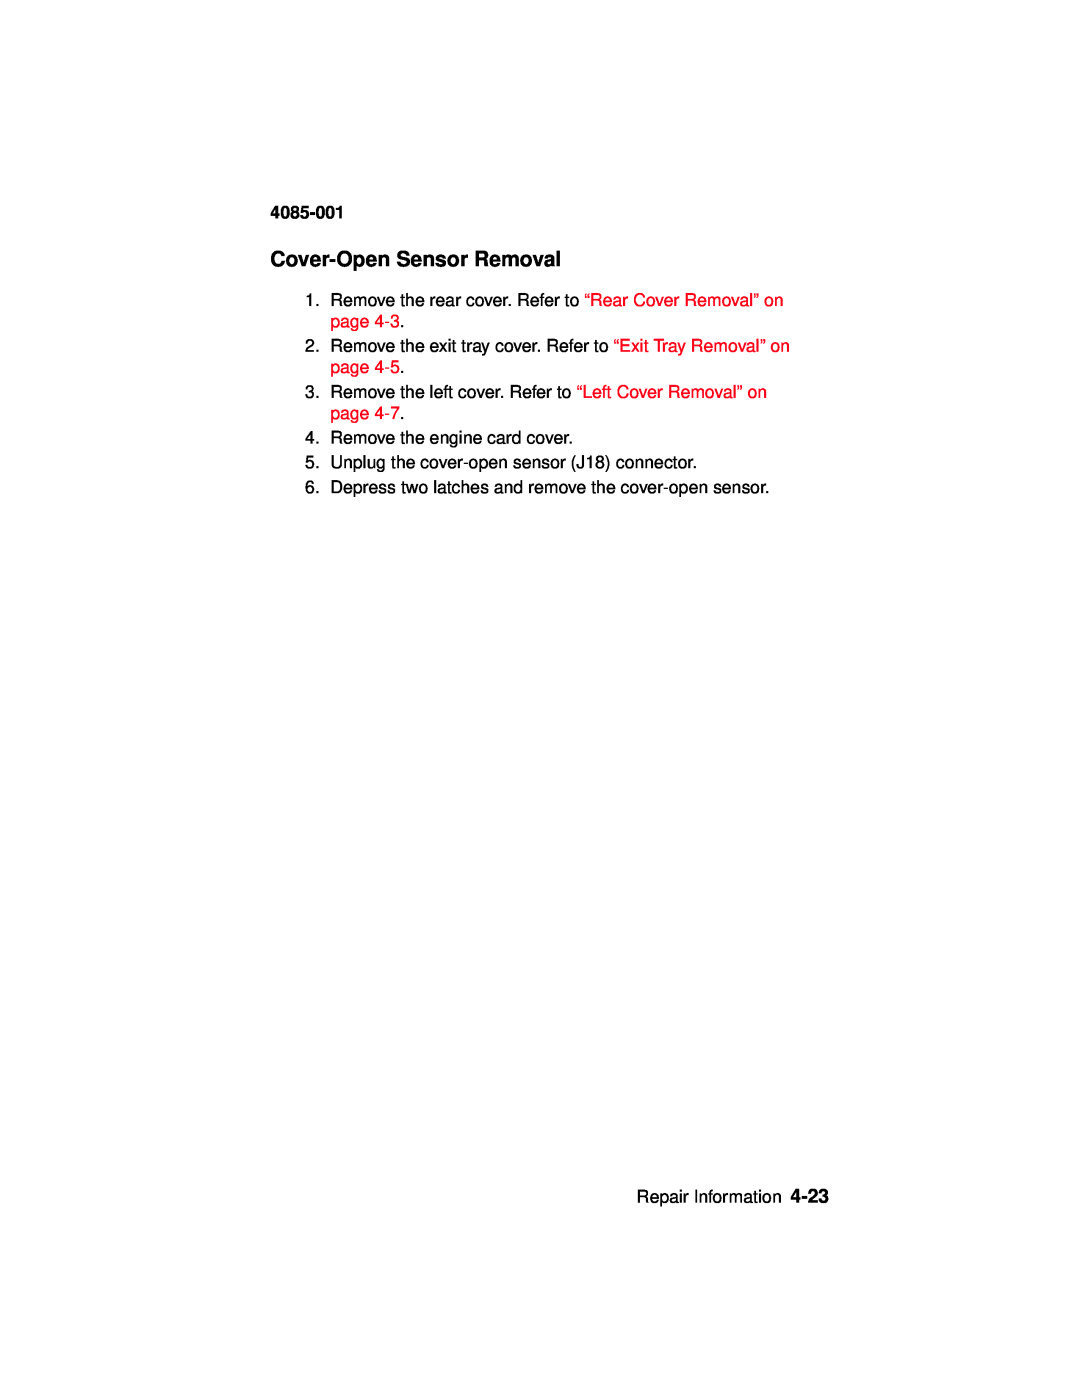 Lexmark Printer, J110 manual Cover-OpenSensor Removal, 4085-001 